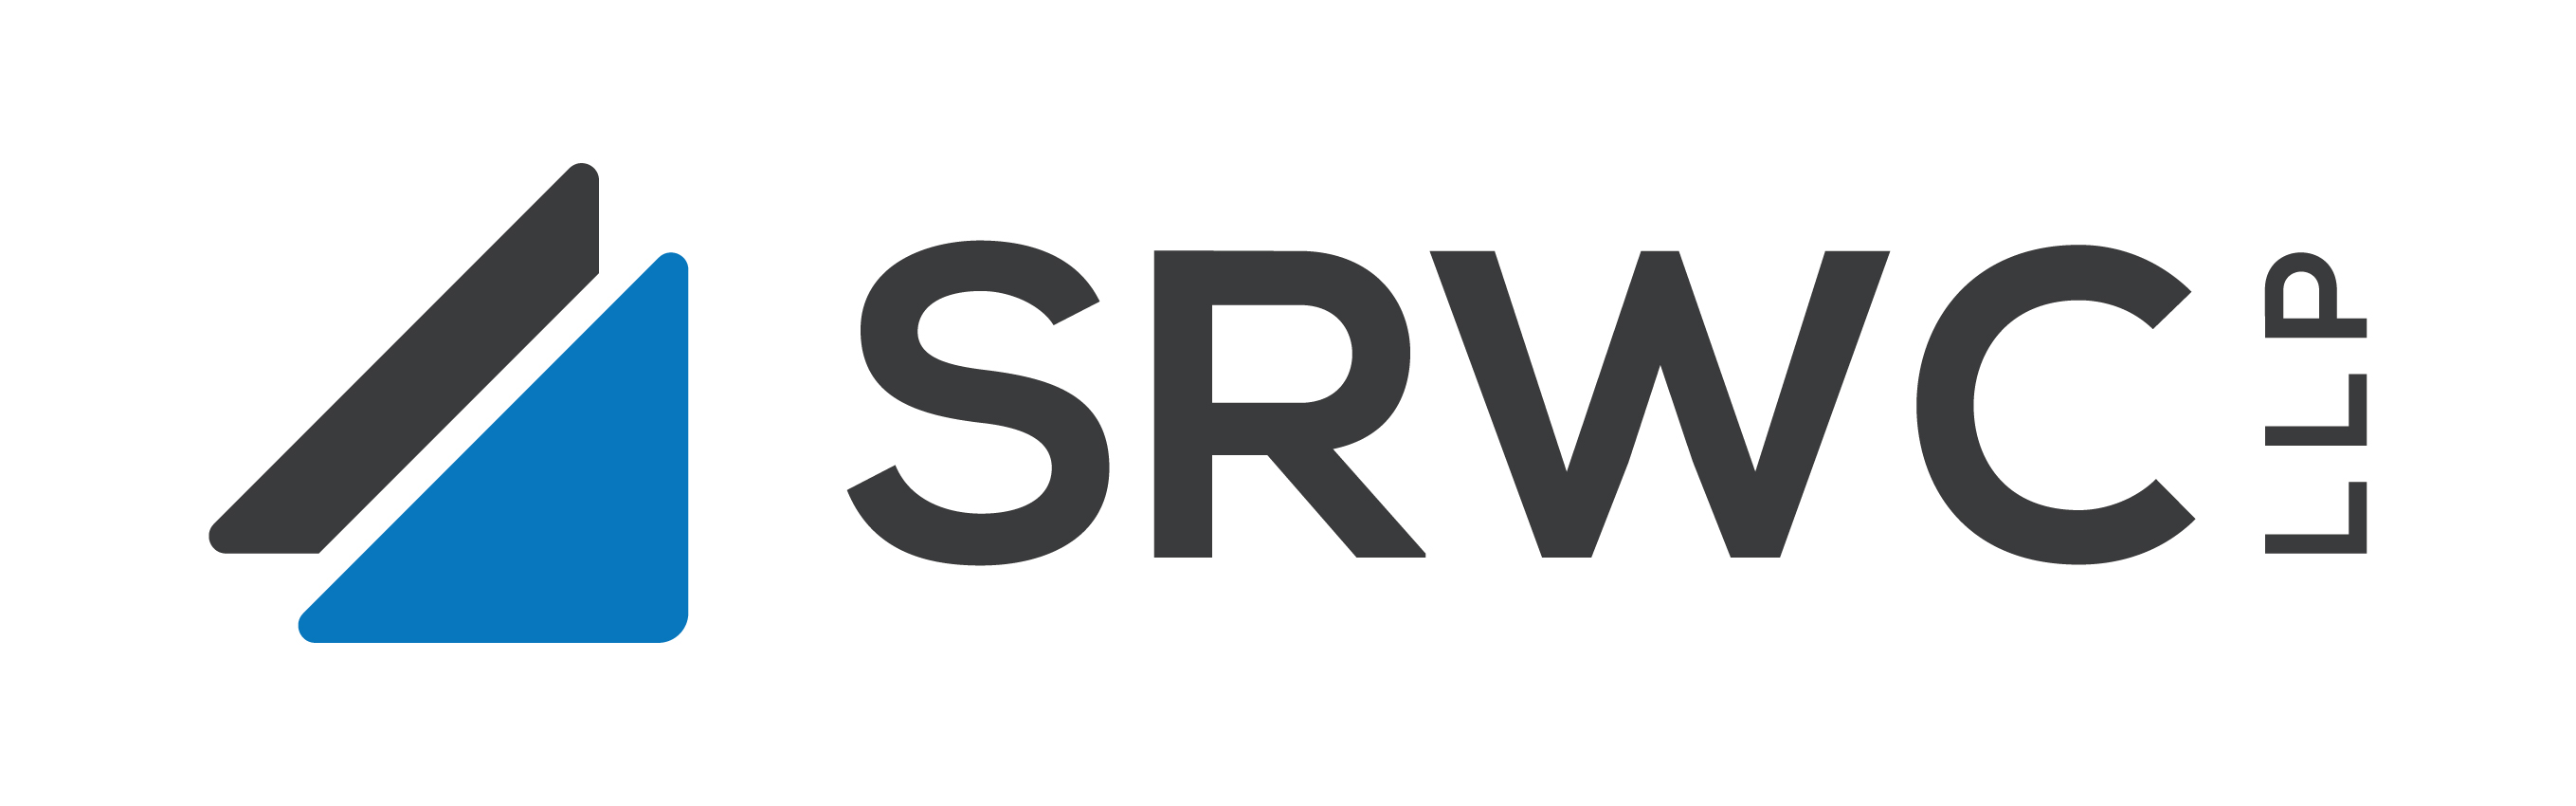 SRWC LLP Chartered Professional Accountants